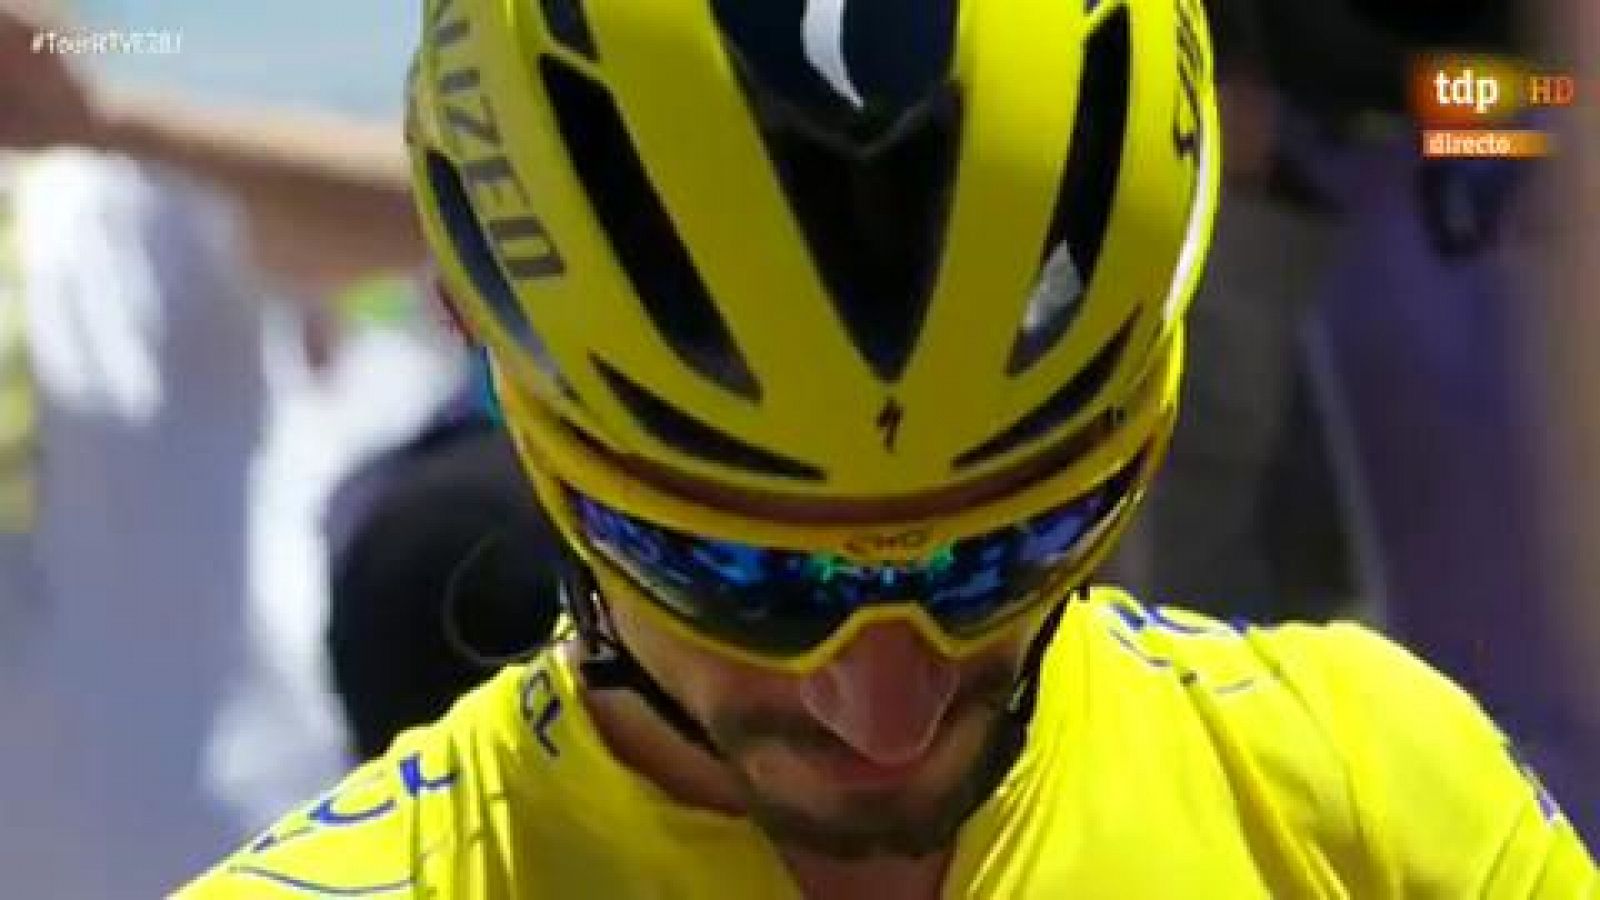 La euforia de toda Colombia por el primer maillot amarillo en el Tour firmado por su nuevo héroe, Egan Bernal, se trasladó a los Campos Elíseos de París, al atardecer, para saludar la entrada de un joven de 22 años llamado a marcar una era en el cicl